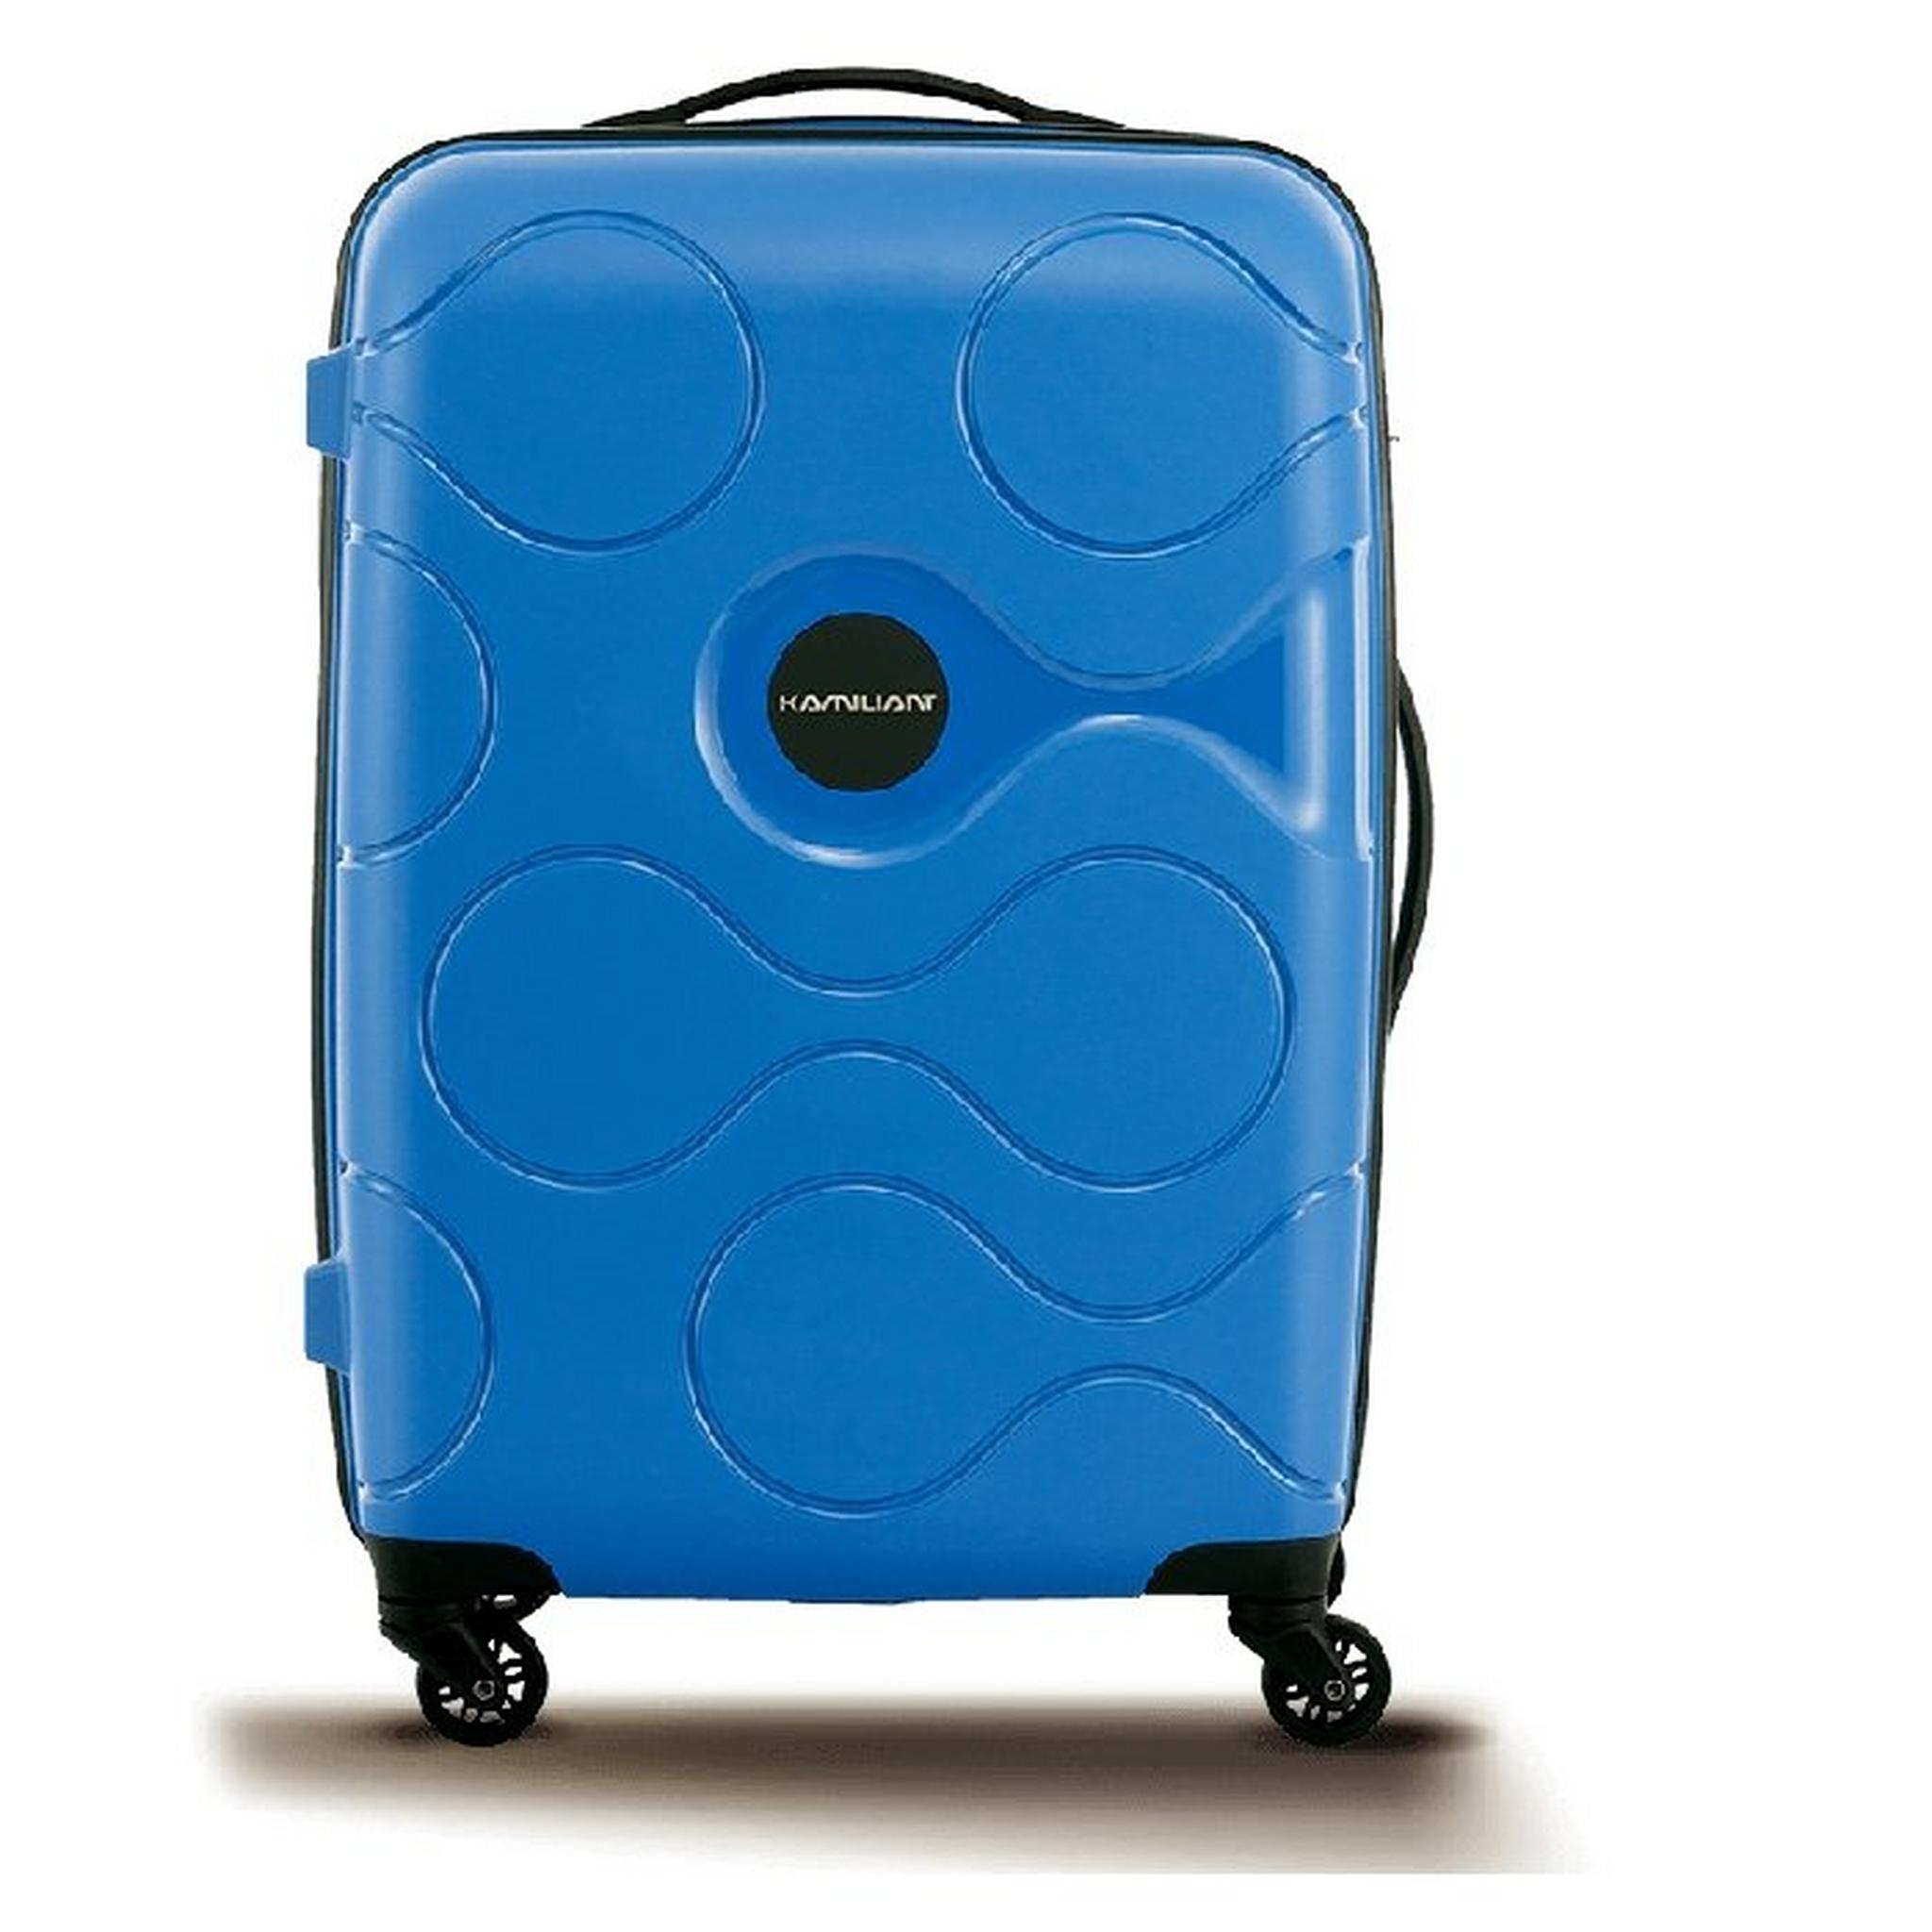 Kamiliant Mapuna Spinner Luggage 67 CM (AM6X71002)  - Regatta Blue